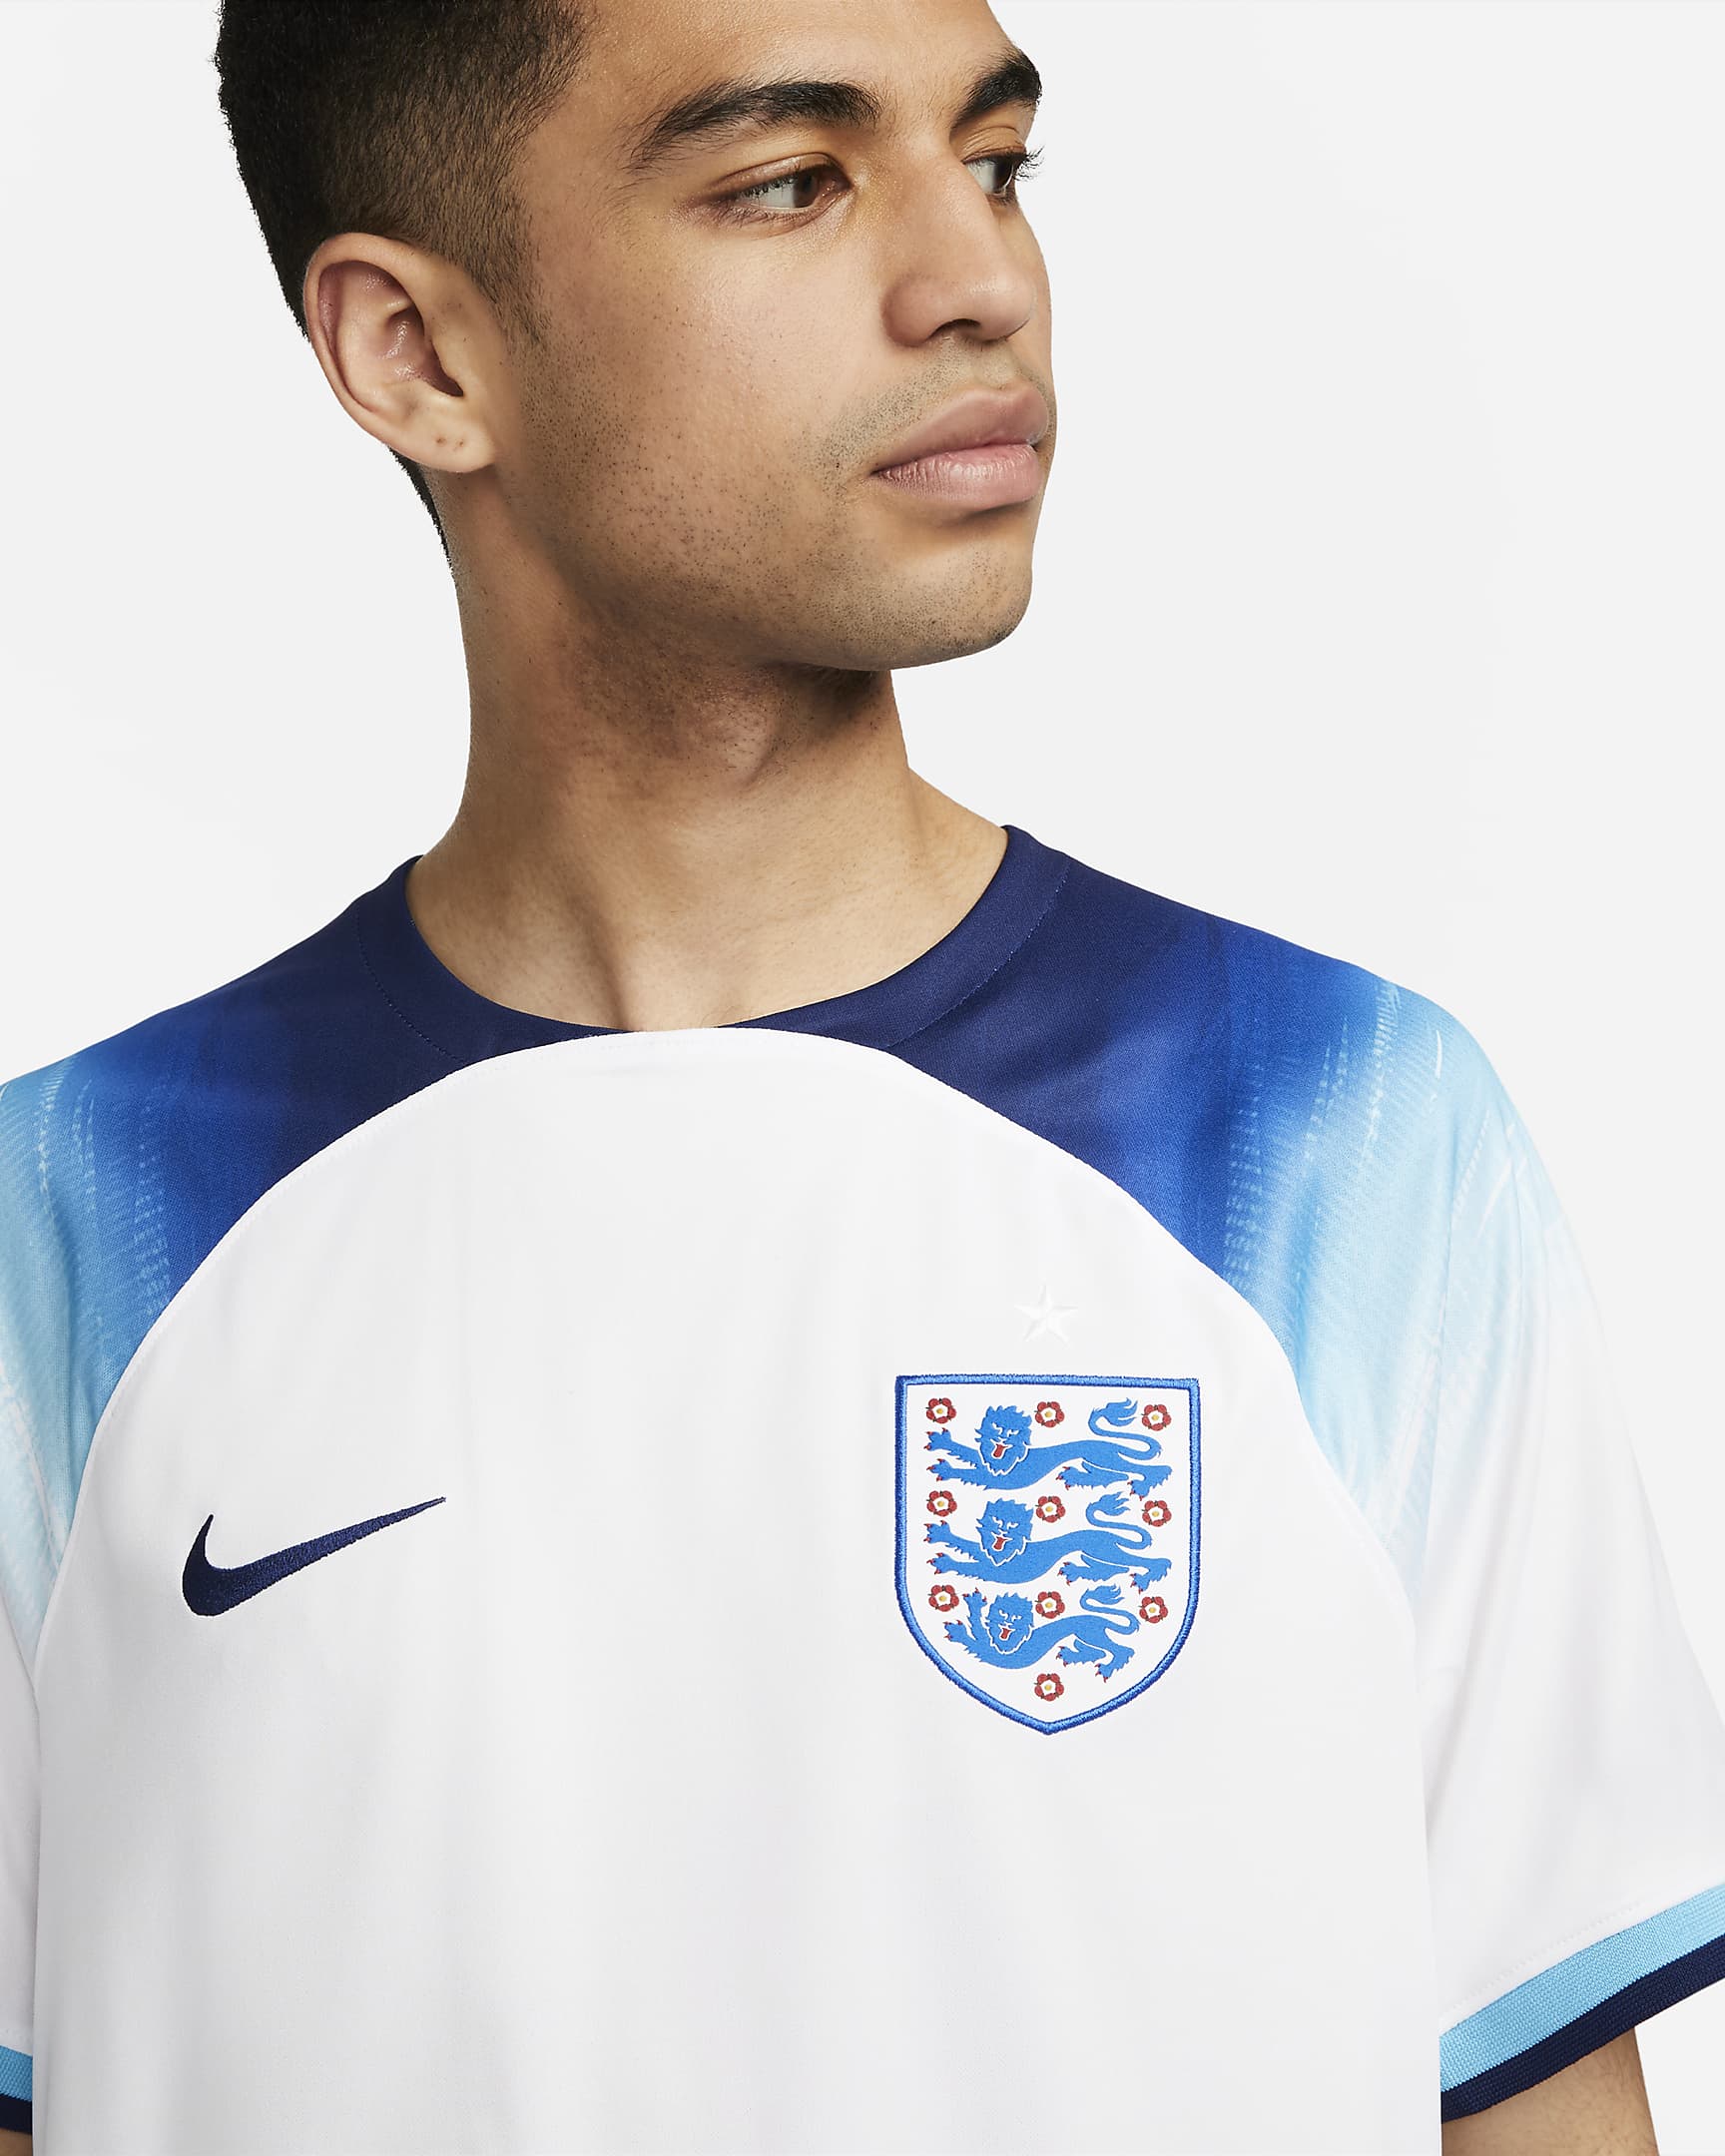 Men's Football Kits & Jerseys. Nike IN